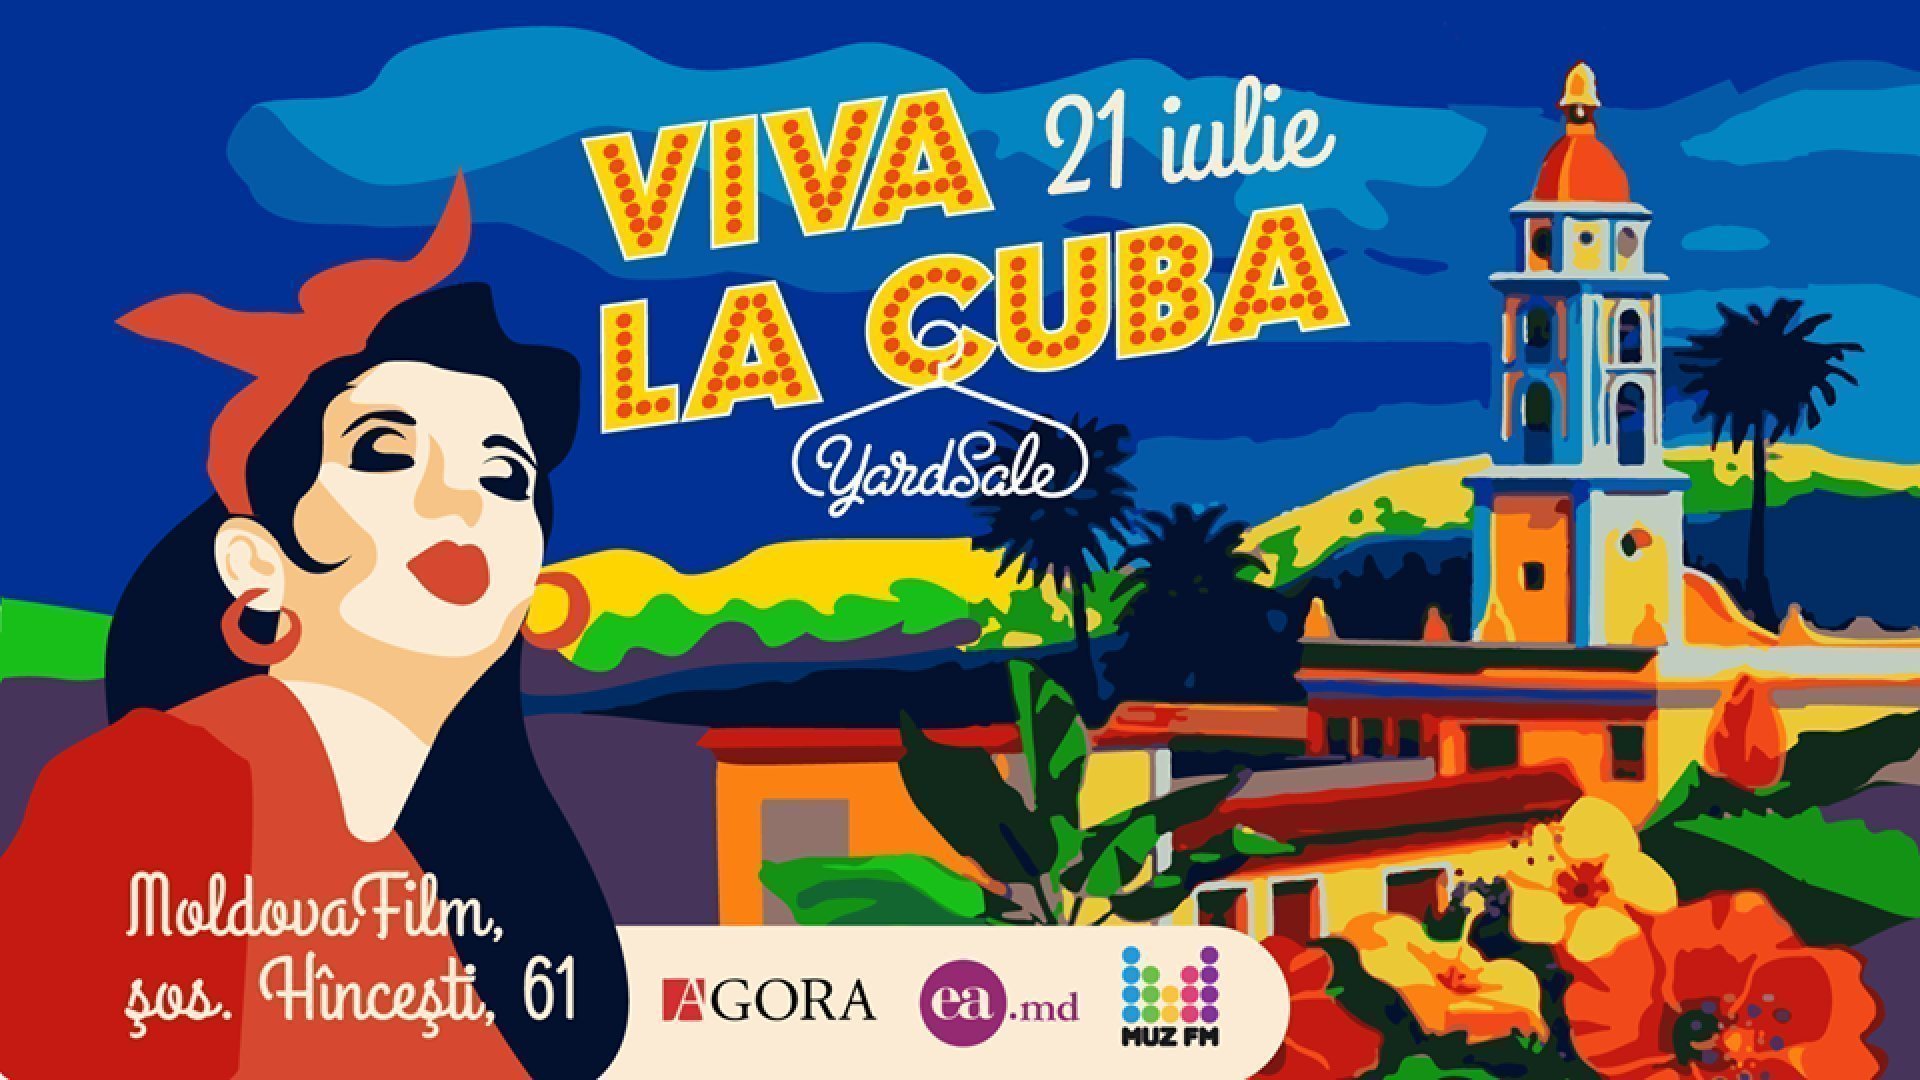 Yardsale - Viva La Cuba 21.07.2019